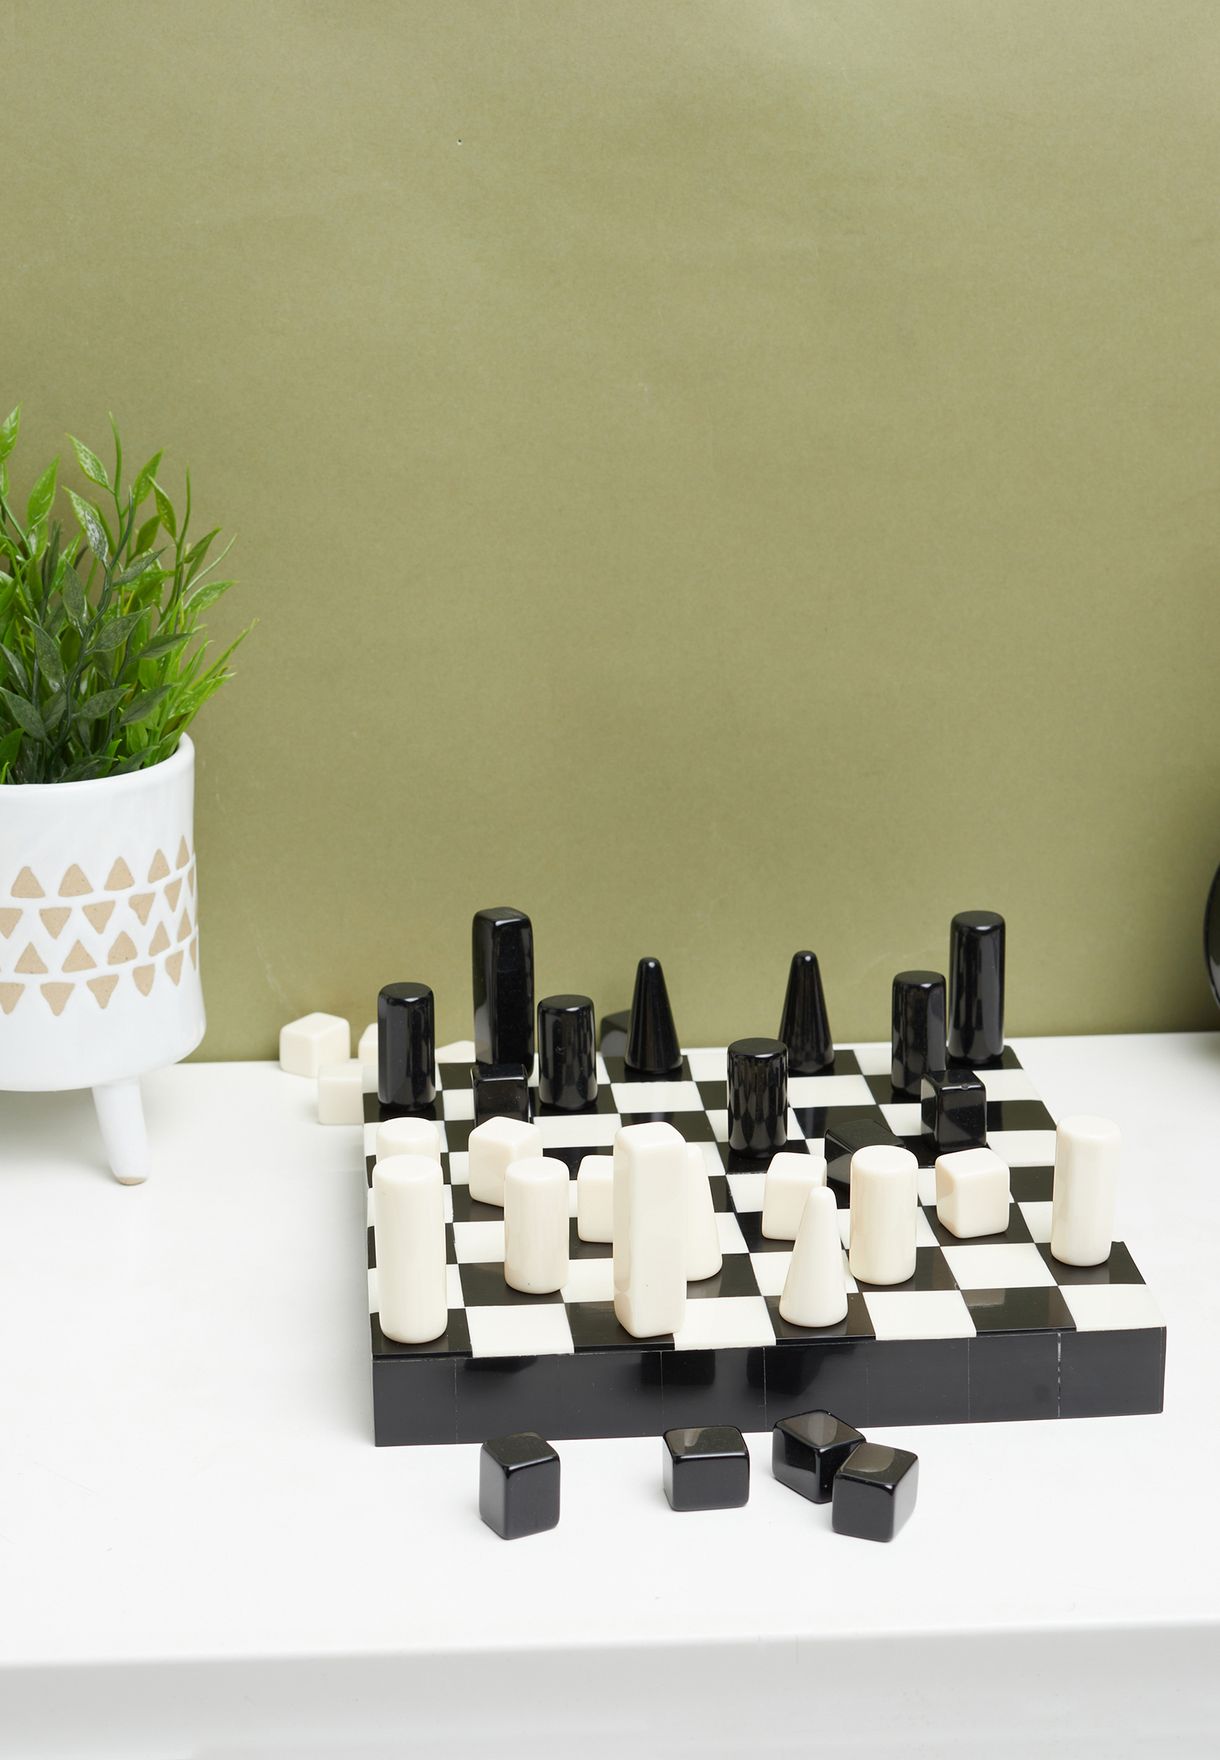 لعبة شطرنج صغيرة قابلة للطي